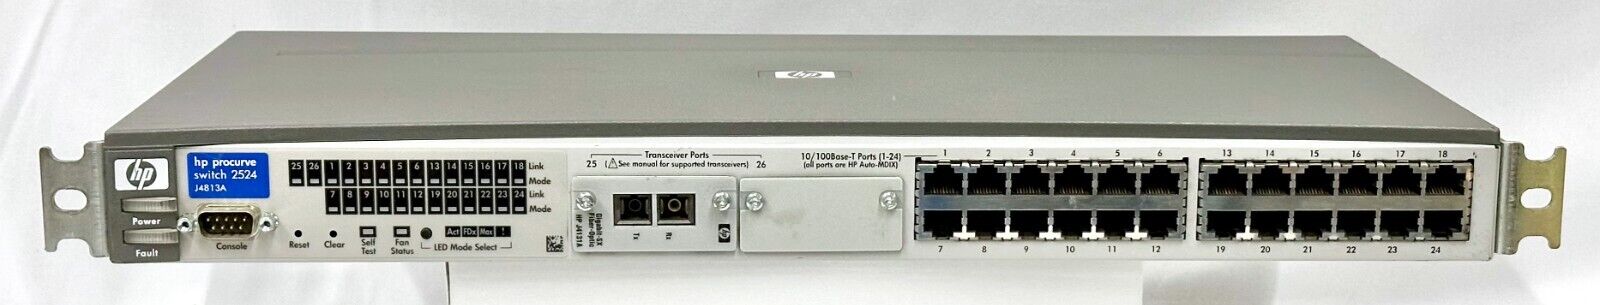 HP ProCurve 2524 24-Port Switch J4813A + Gigabit-SX Fiber Optic HP J4131A